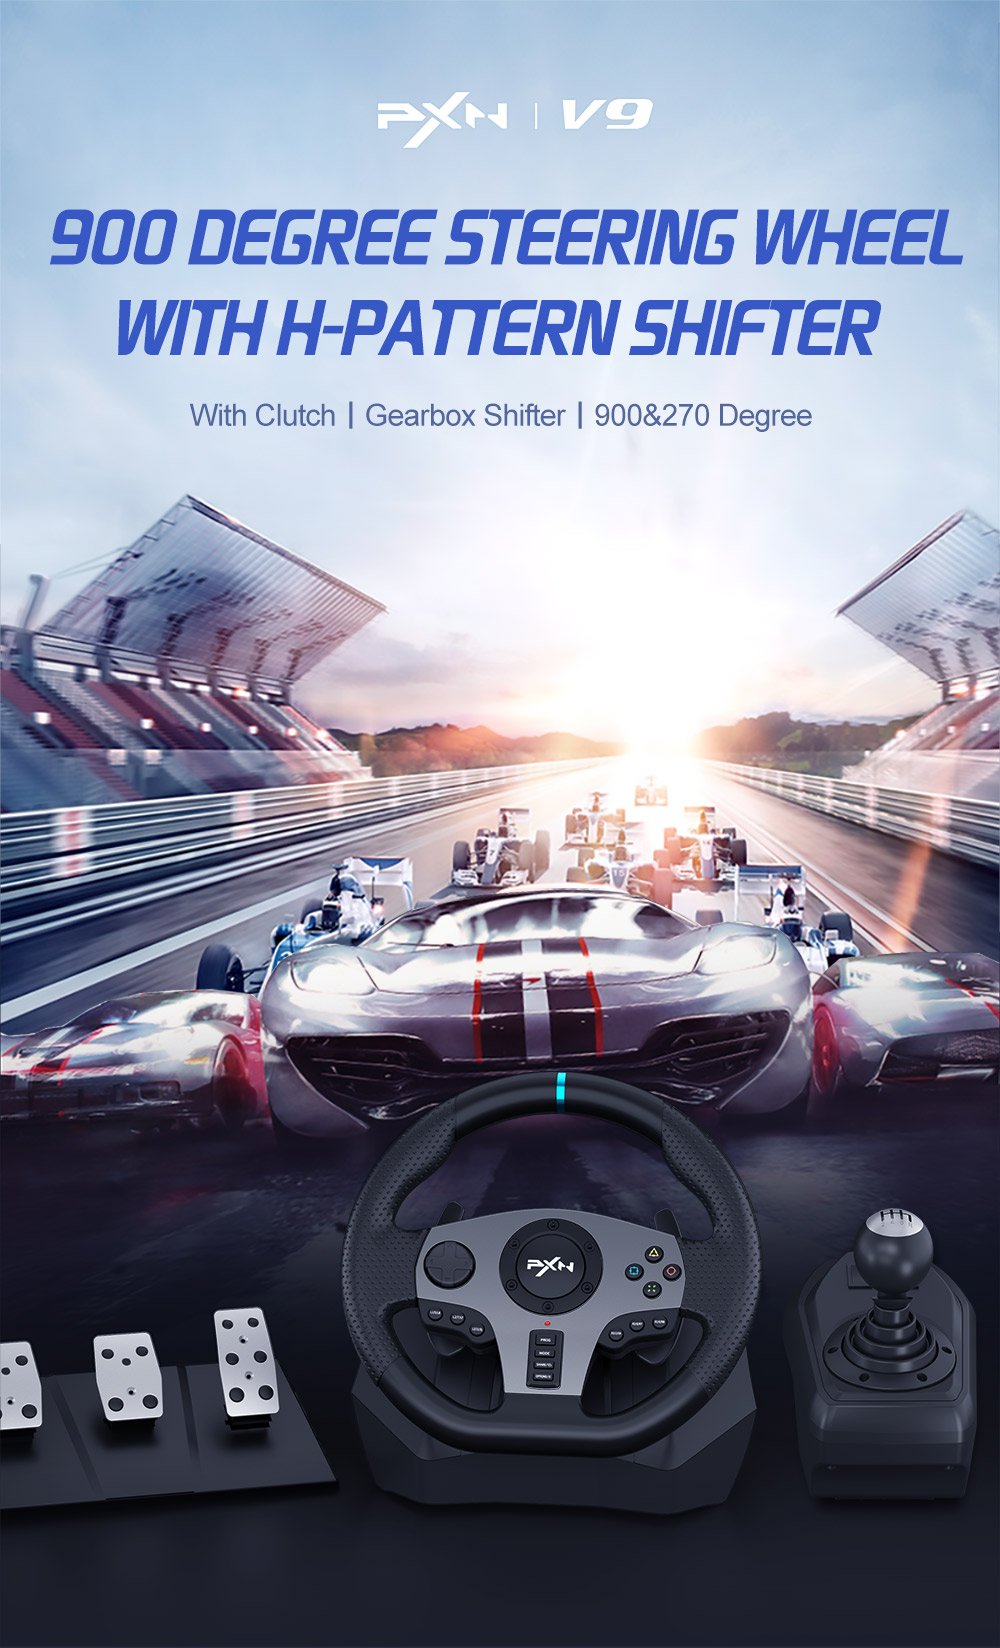 PXN-V9 | PXN Racing Wheel, Game Controller, Arcade Stick for Xbox 